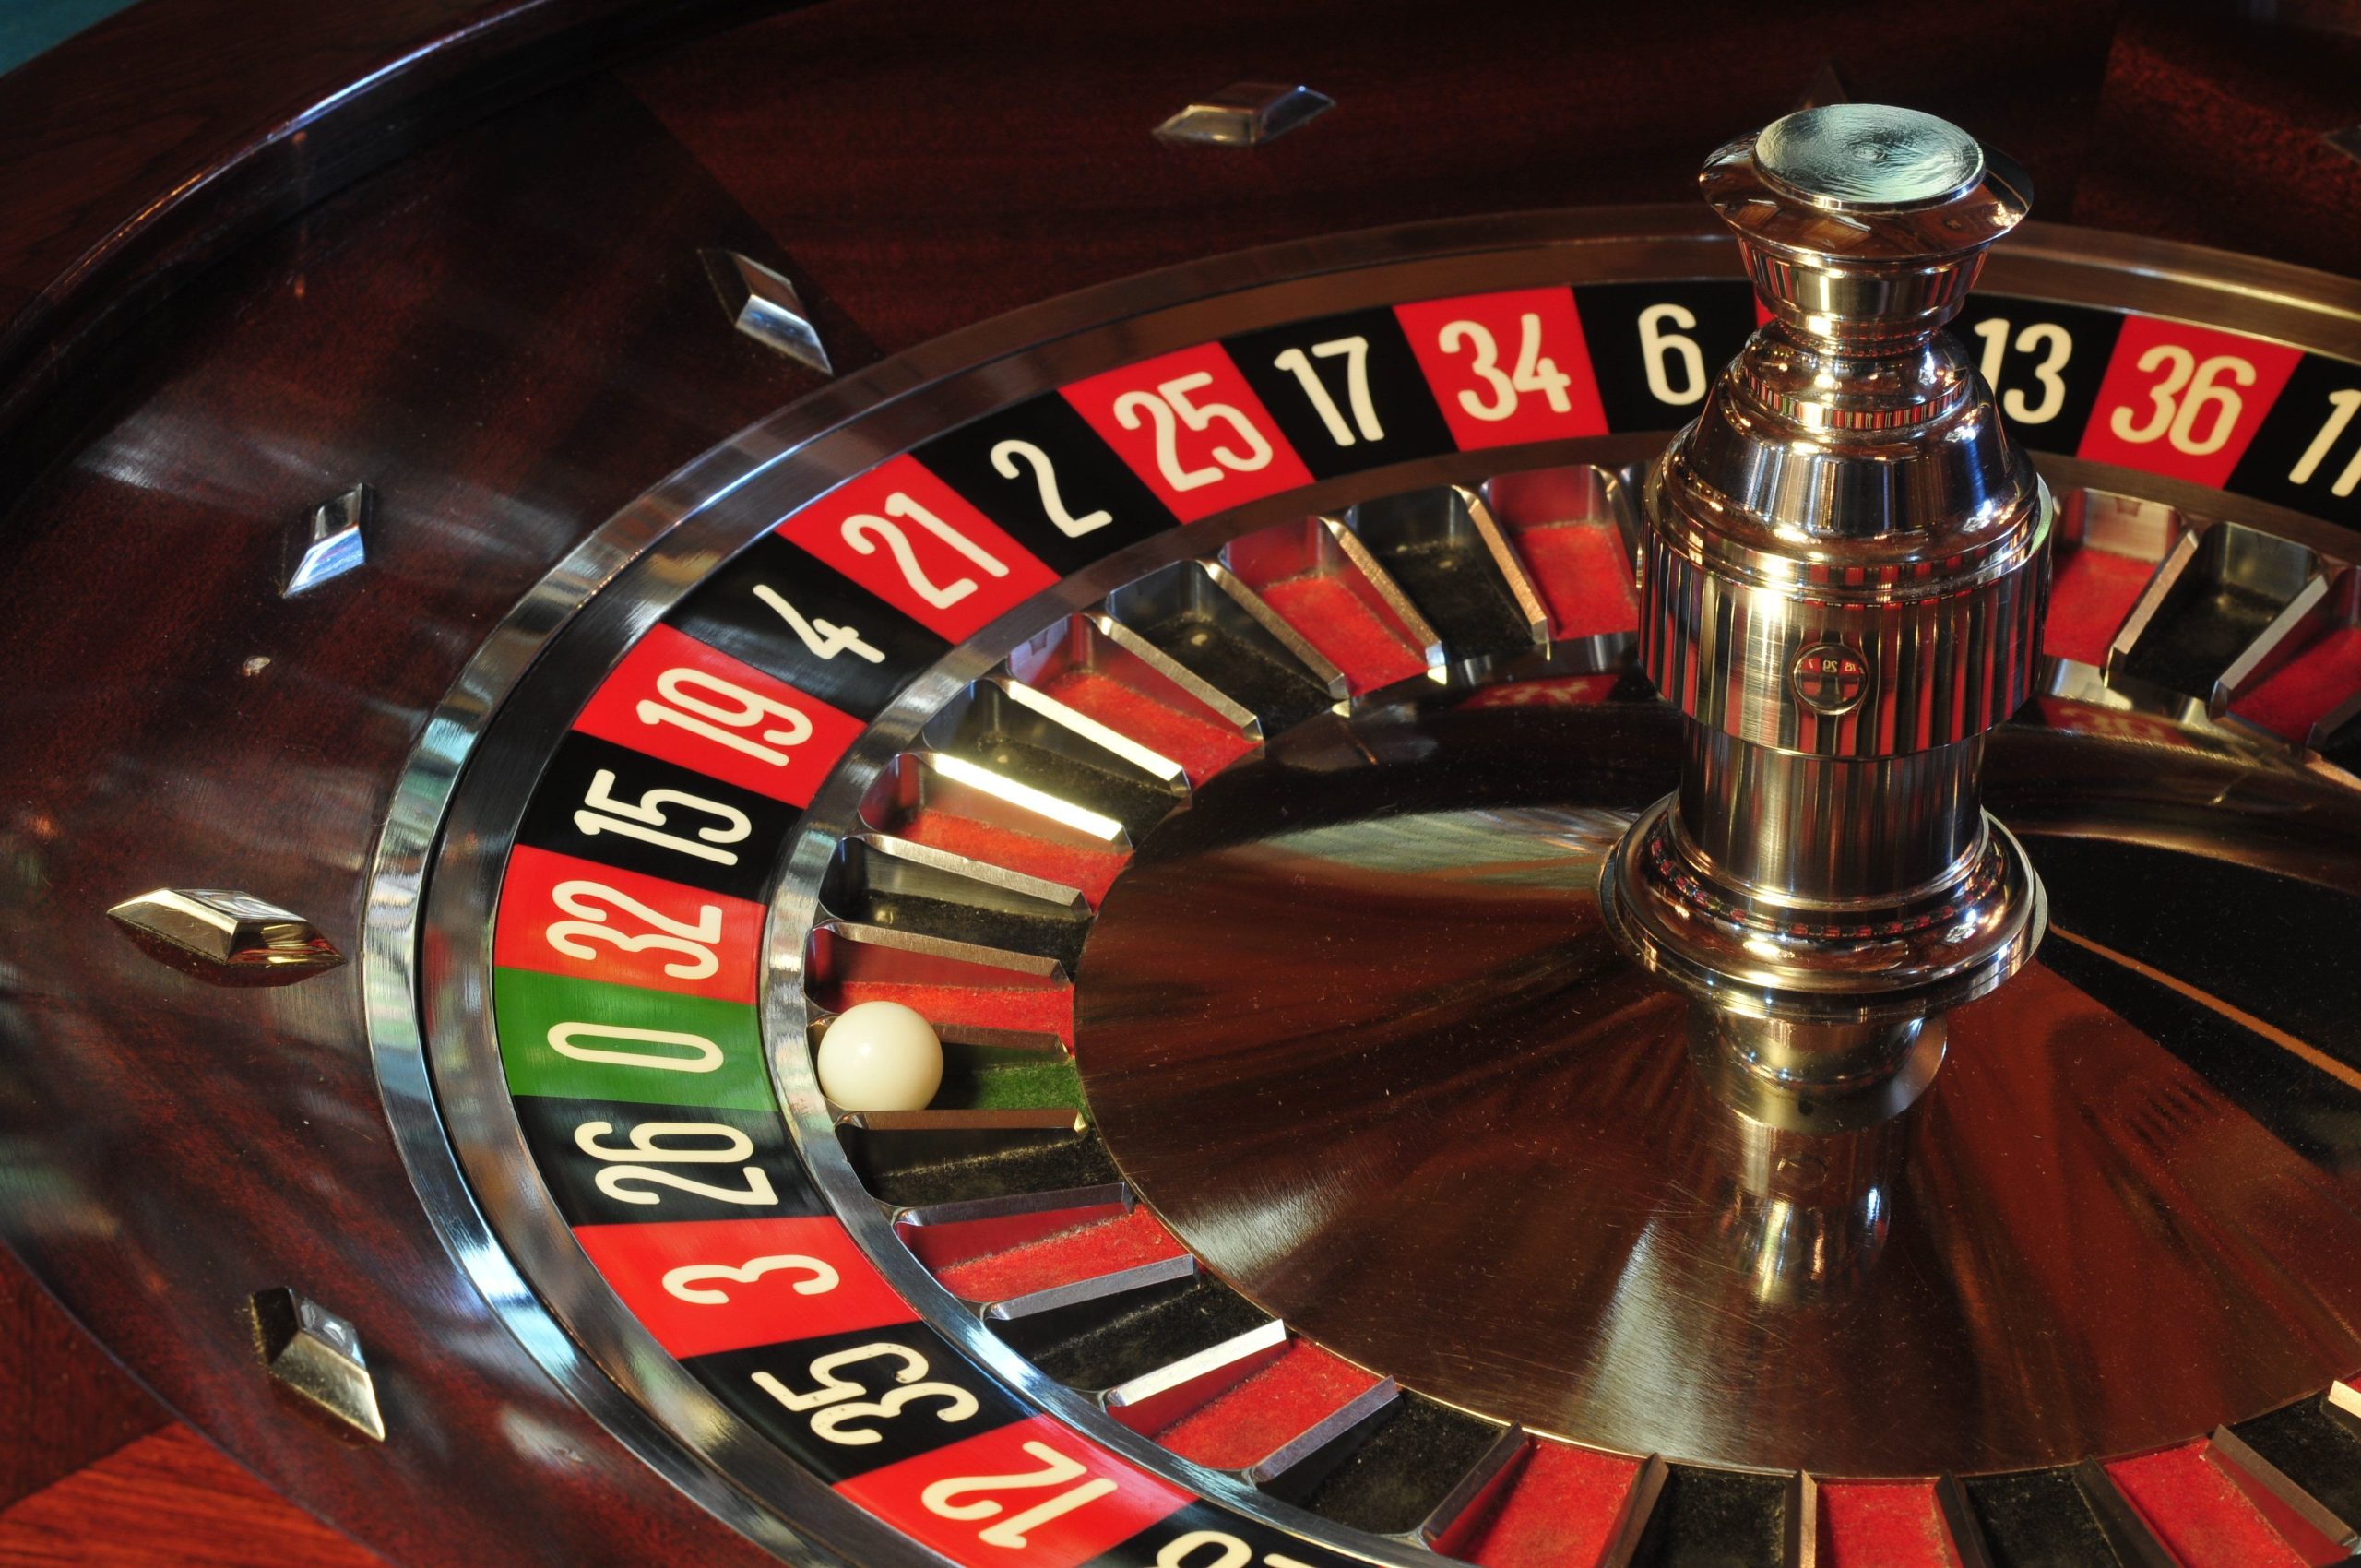 Situs Judi Online – How To Choose Casino Websites?